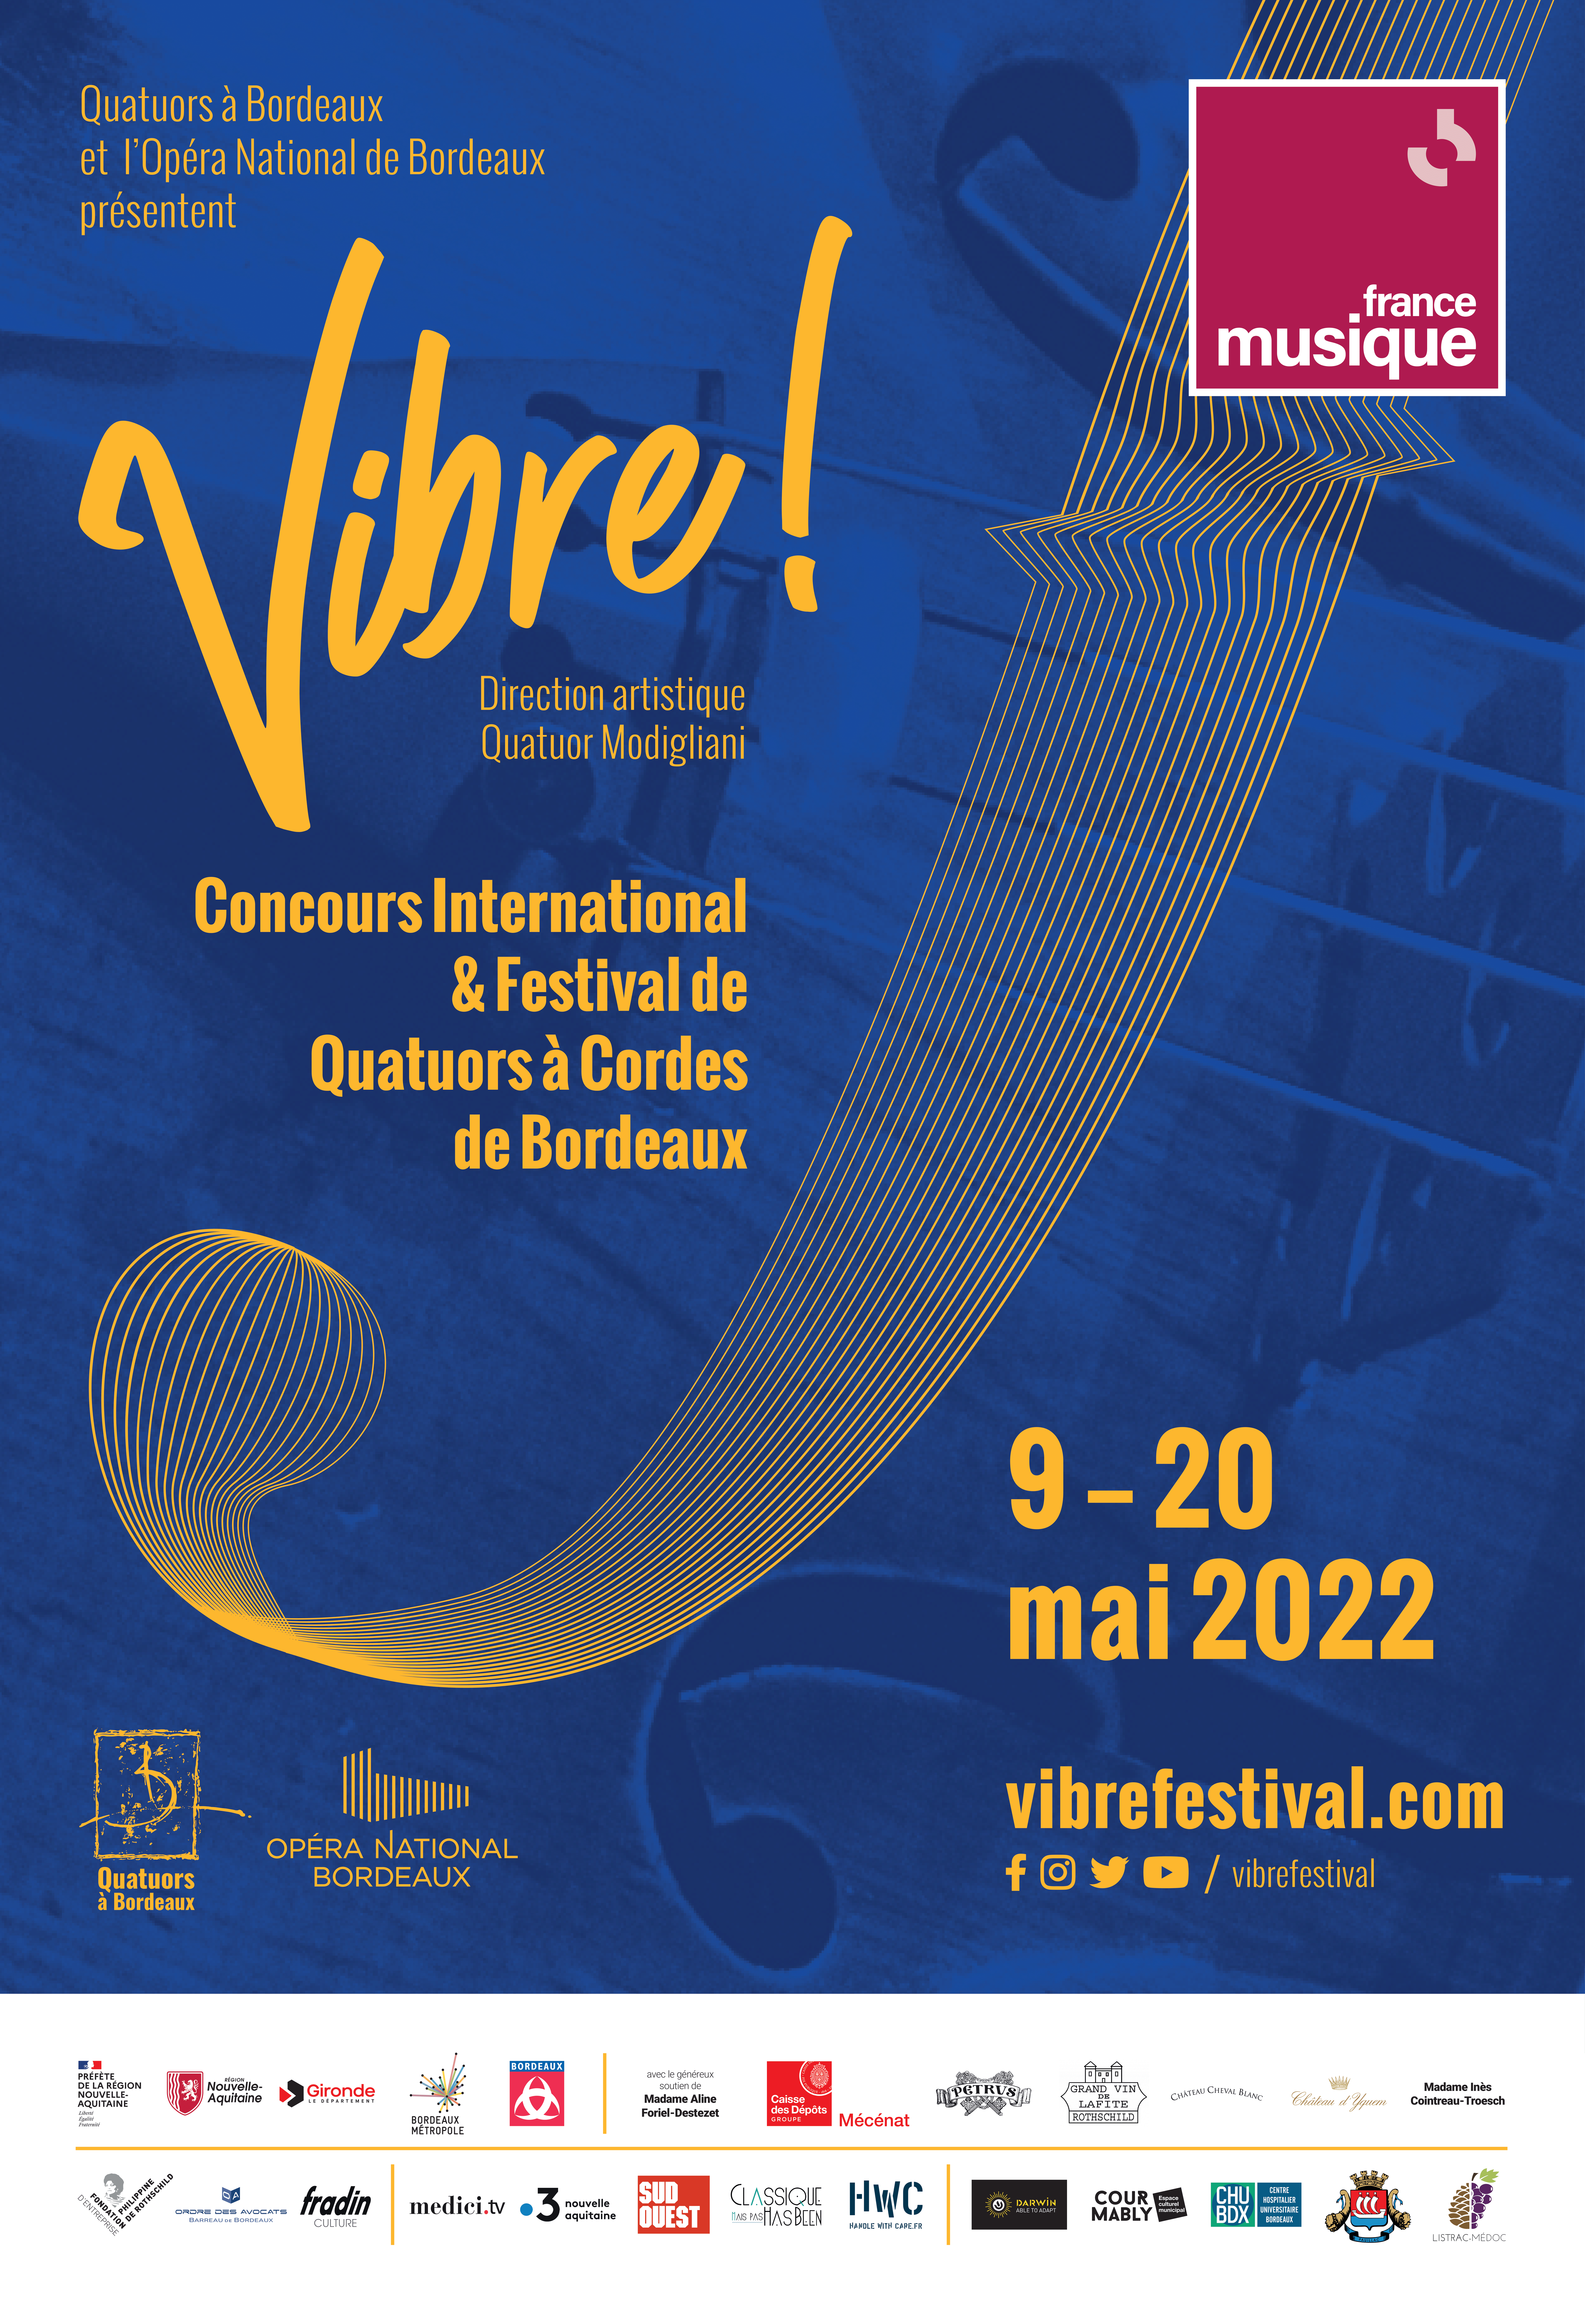 Affiche de Vibre ! où figure le nom du festival "Concours International & Festival de Quatuor à Cordes de Bordeaux" ainsi que le logo de France Musique, partenaire principal en haut à droite,